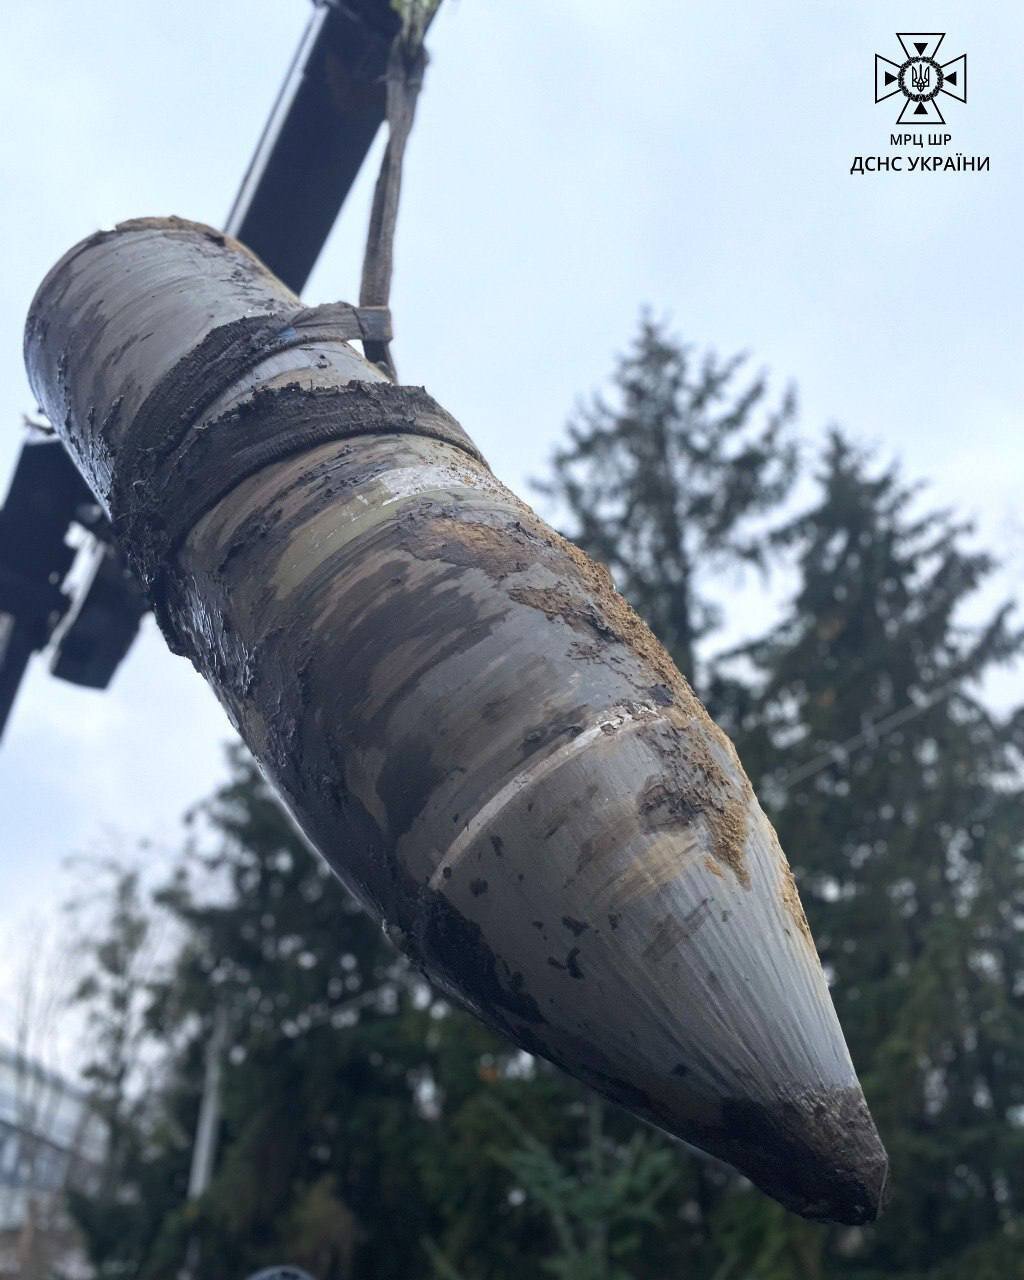 اوکراین موشک منفجرنشده کینژال را خنثی کرد/عکس